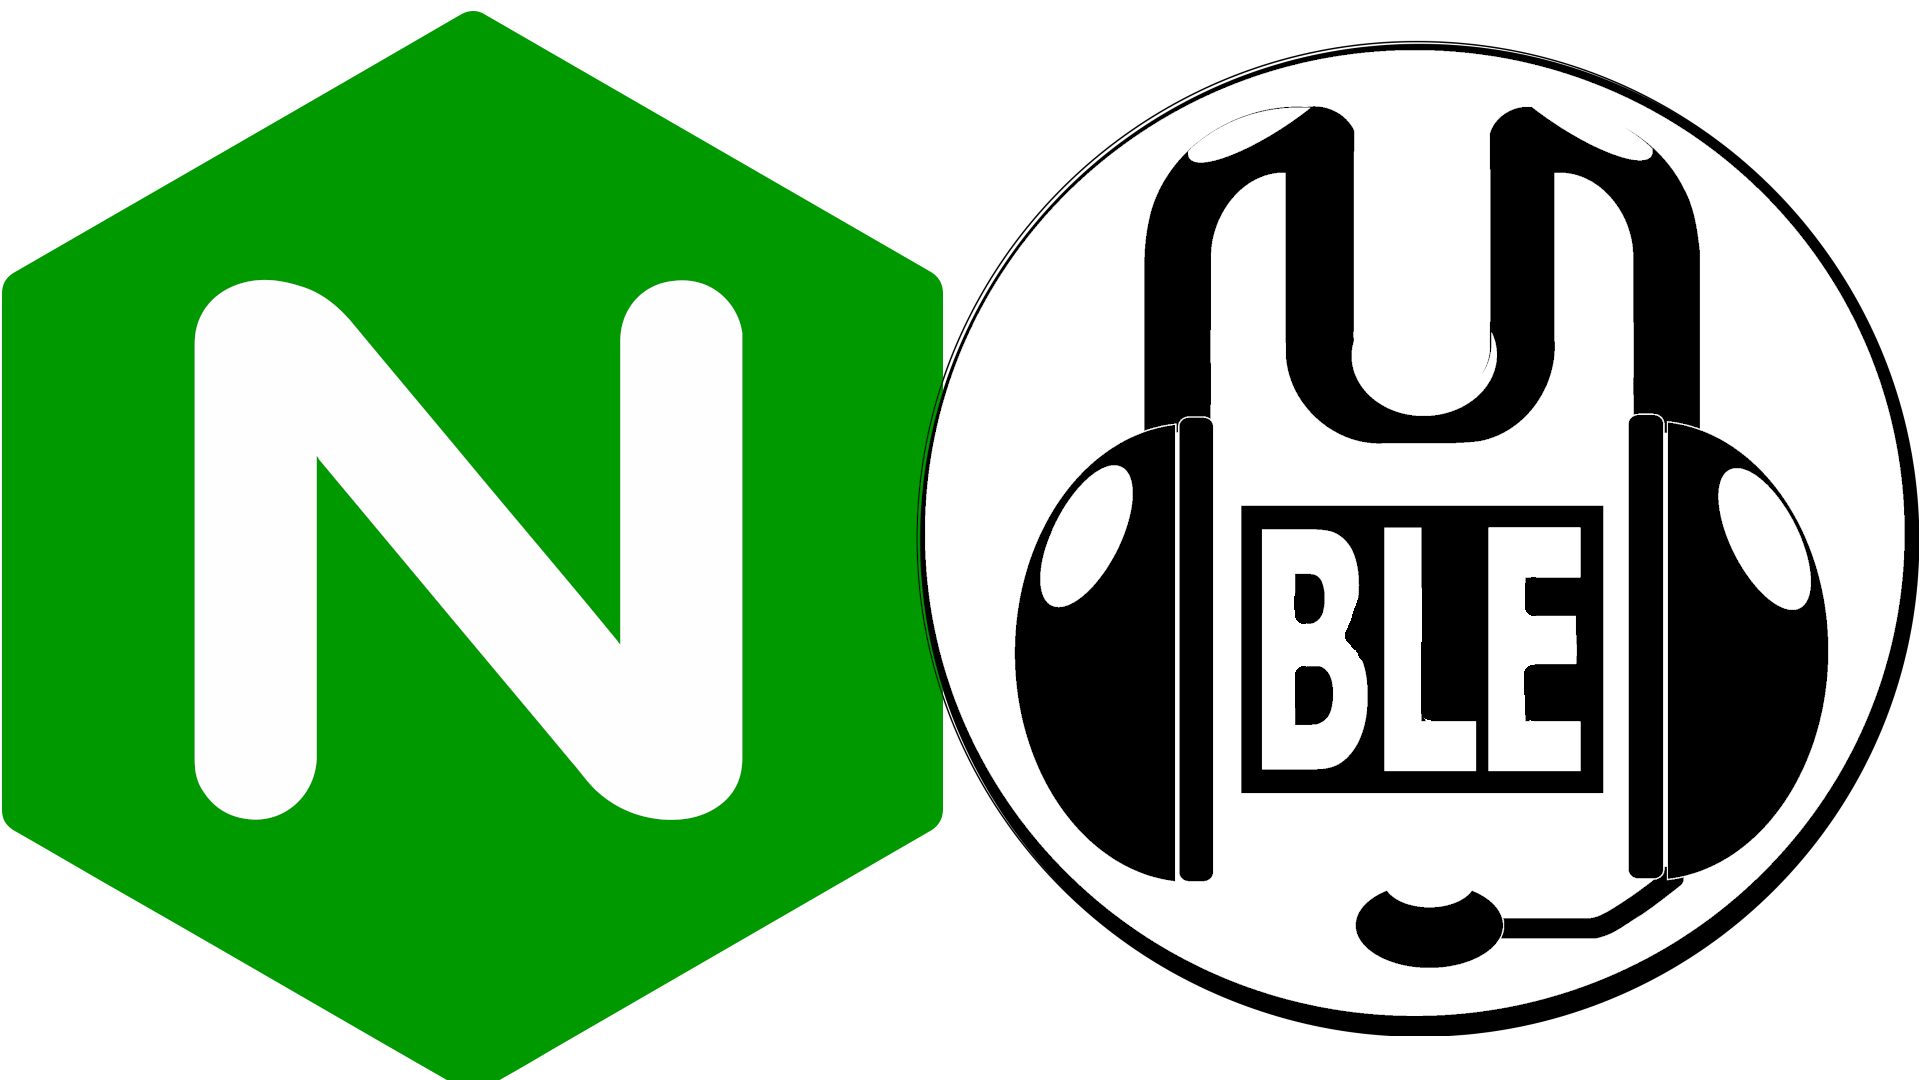 Nginx logo and Mumble Logo